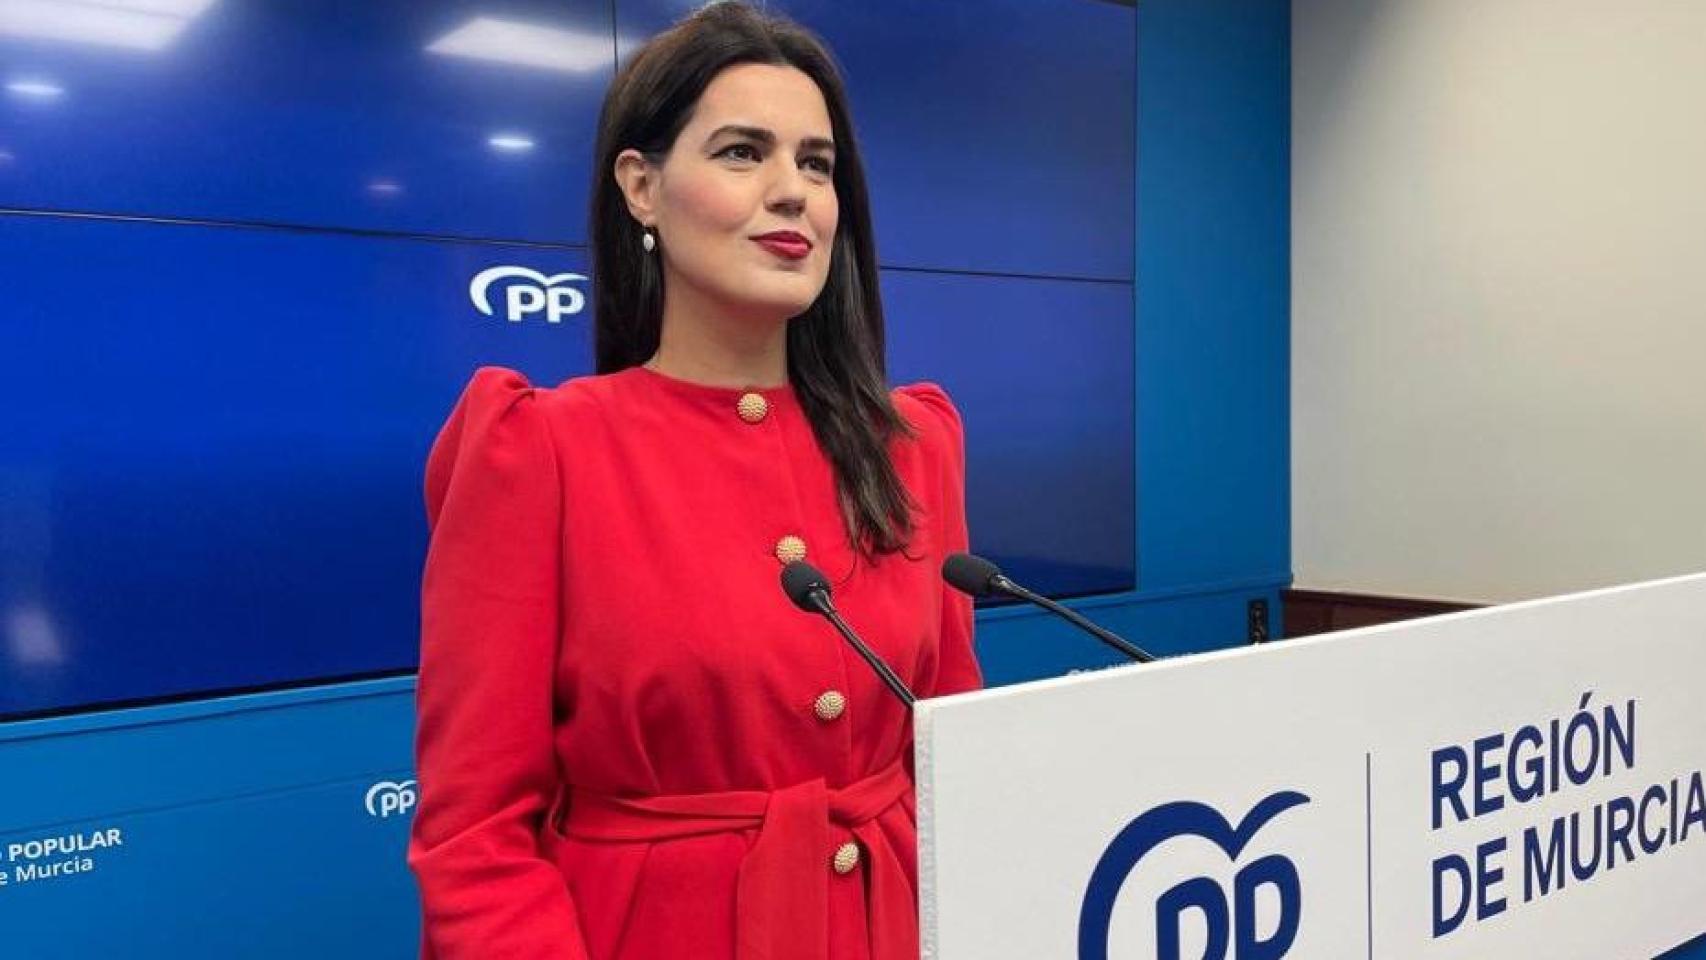 La portavoz del PP en la Región de Murcia, Miriam Guardiola.